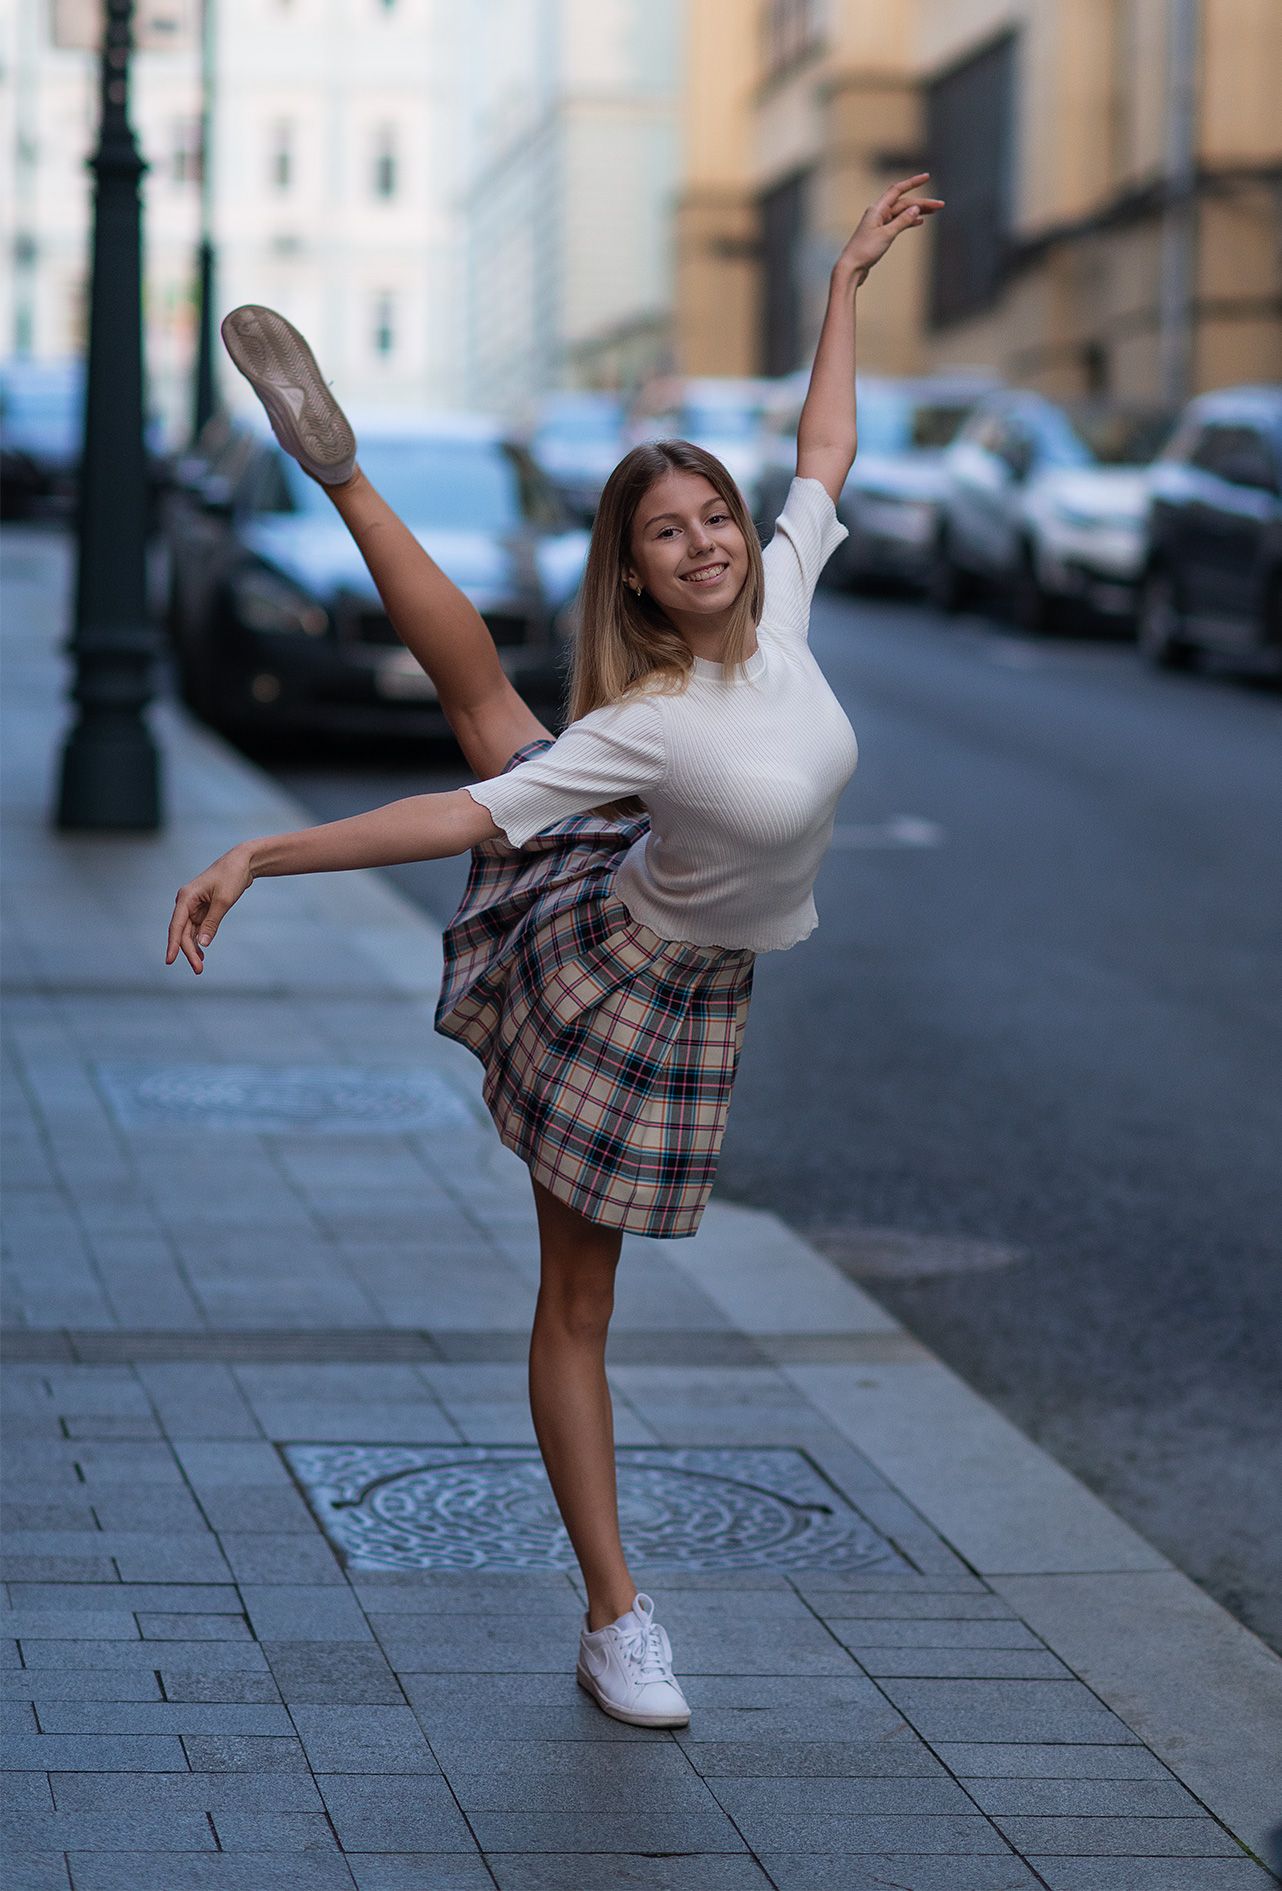 #ballet #portrait #balletphotography #балет #портрет, Мощенко Сергей